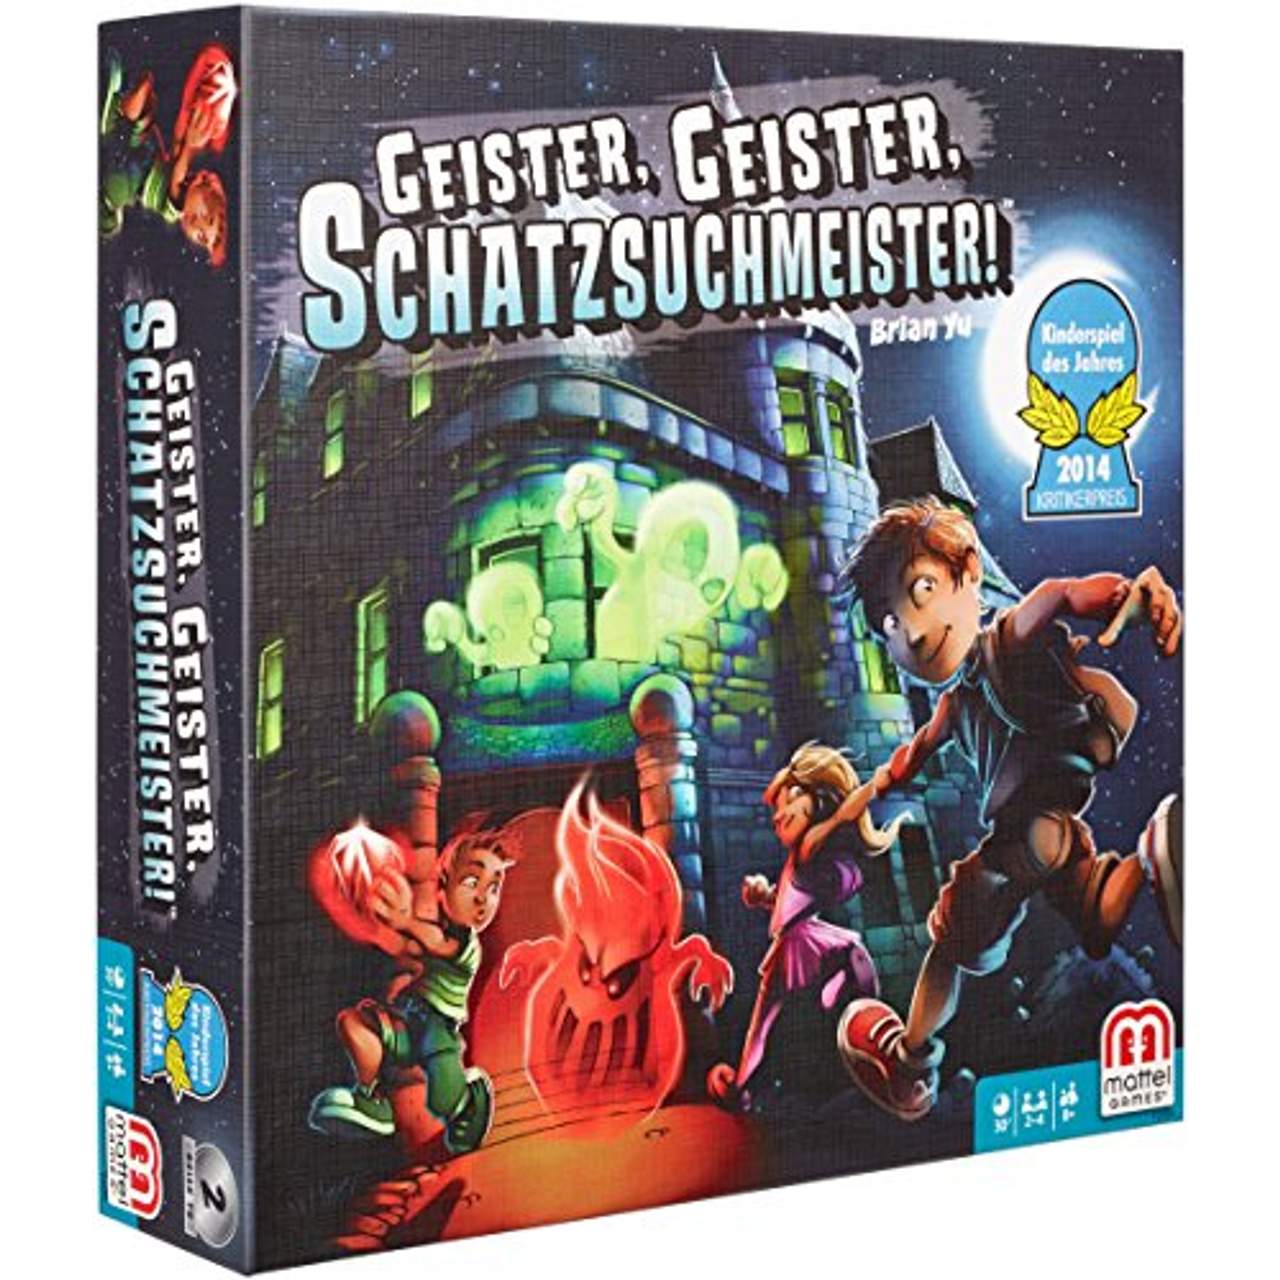 Geister Geister Schatzsuchmeister, Kinderspiel des Jahres 2014